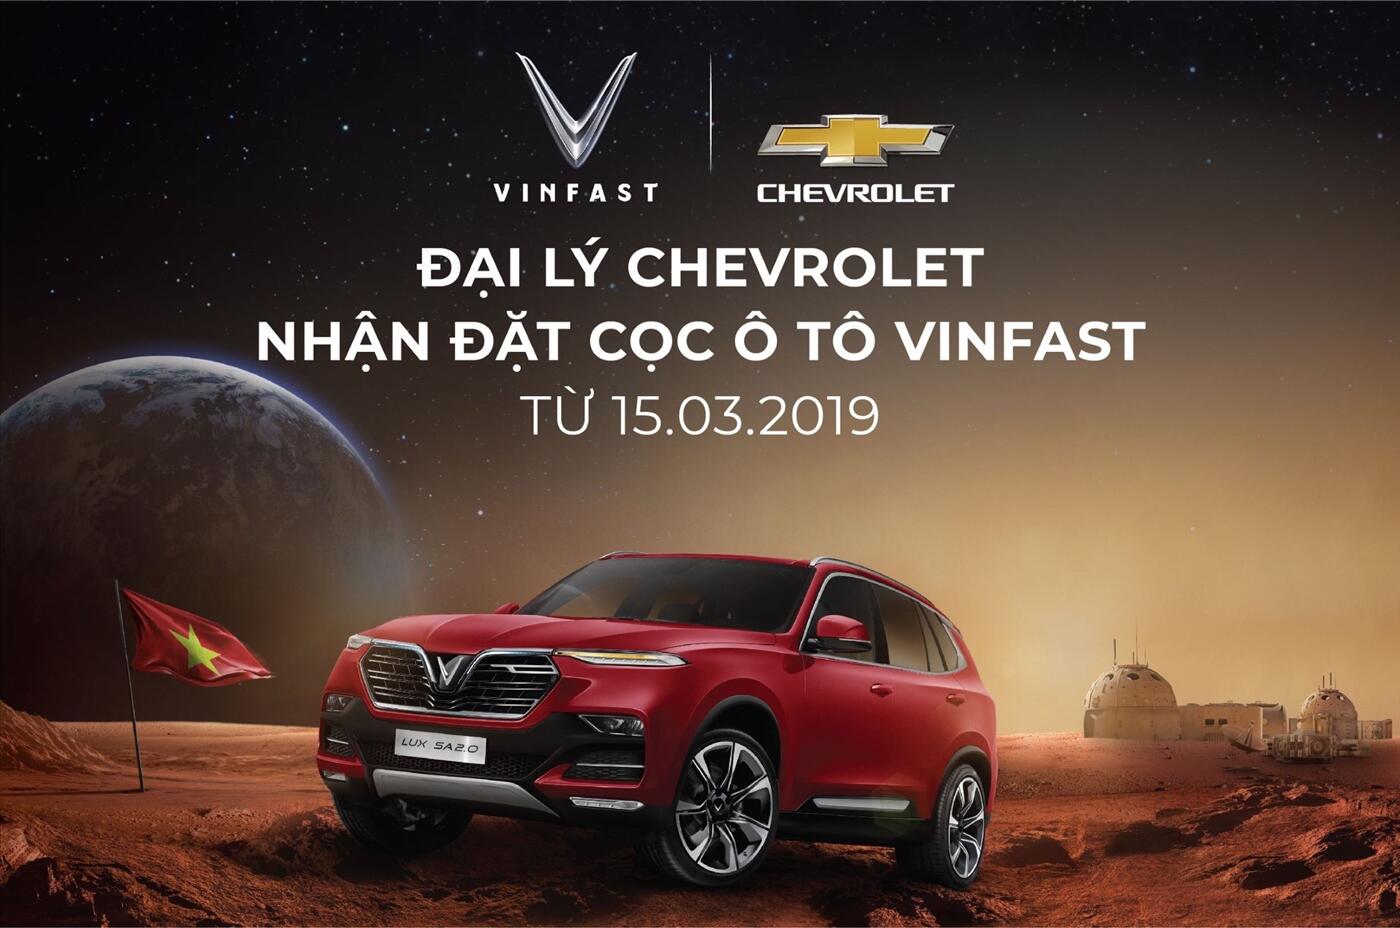  Đại lý chevrolet chính thức nhận cọc xe VinFast  từ ngày 15/03/2019